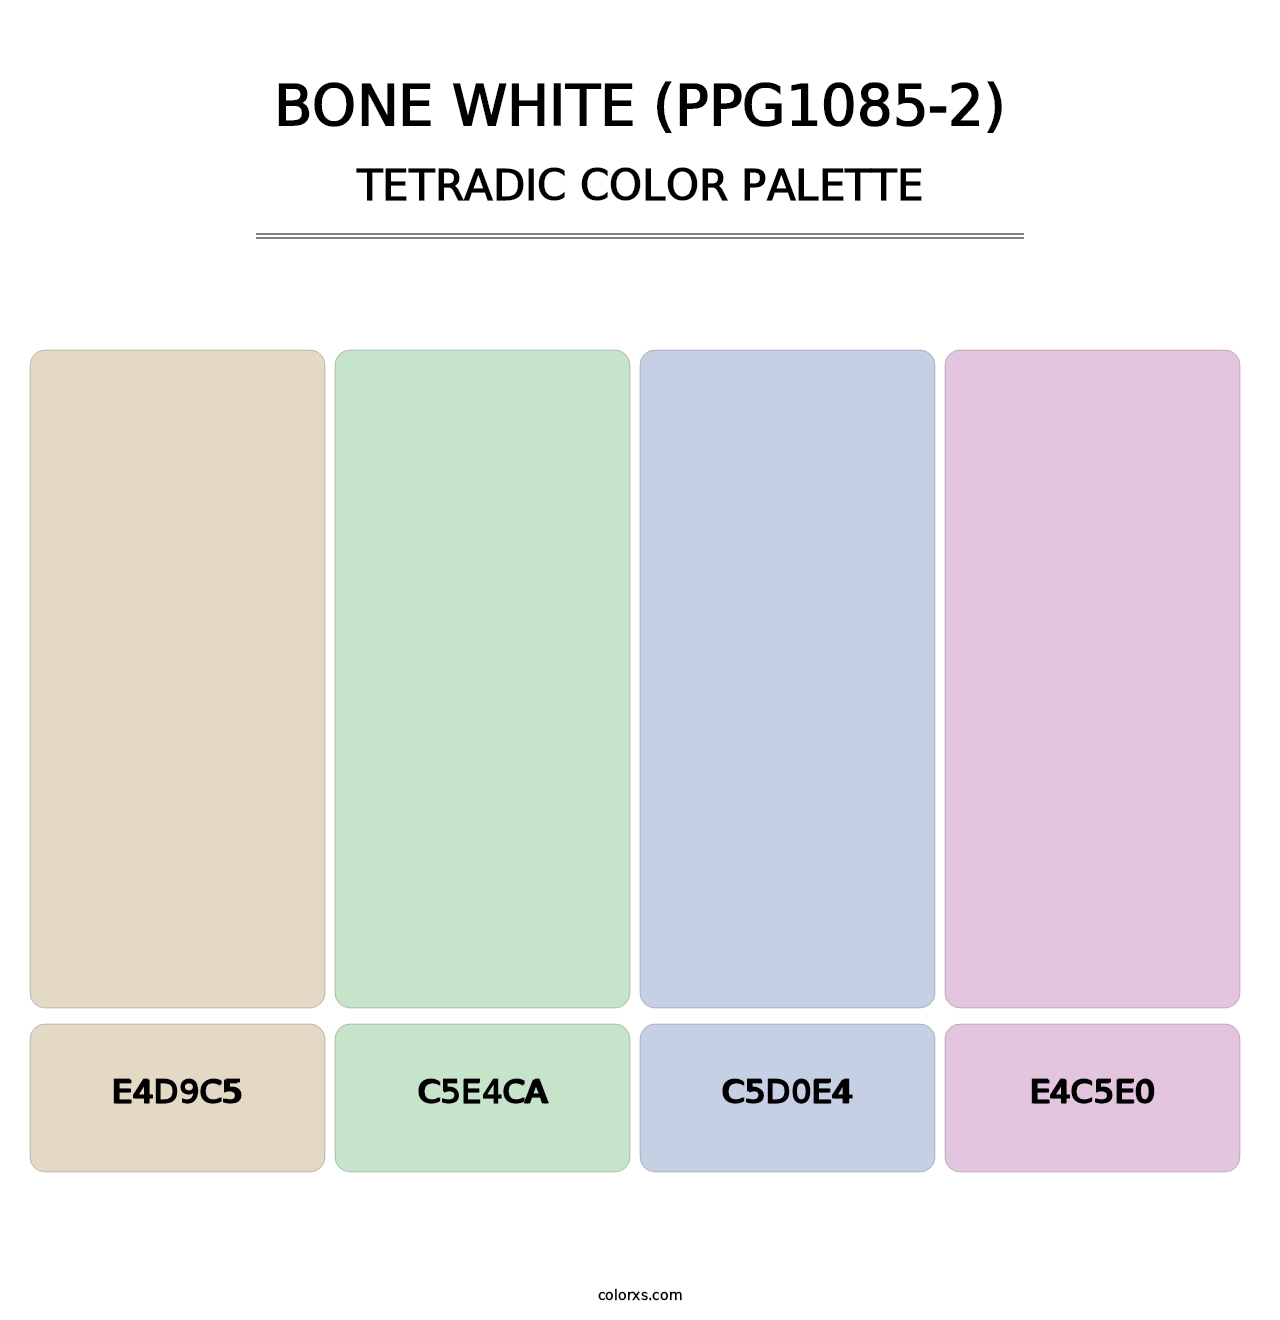 Bone White (PPG1085-2) - Tetradic Color Palette